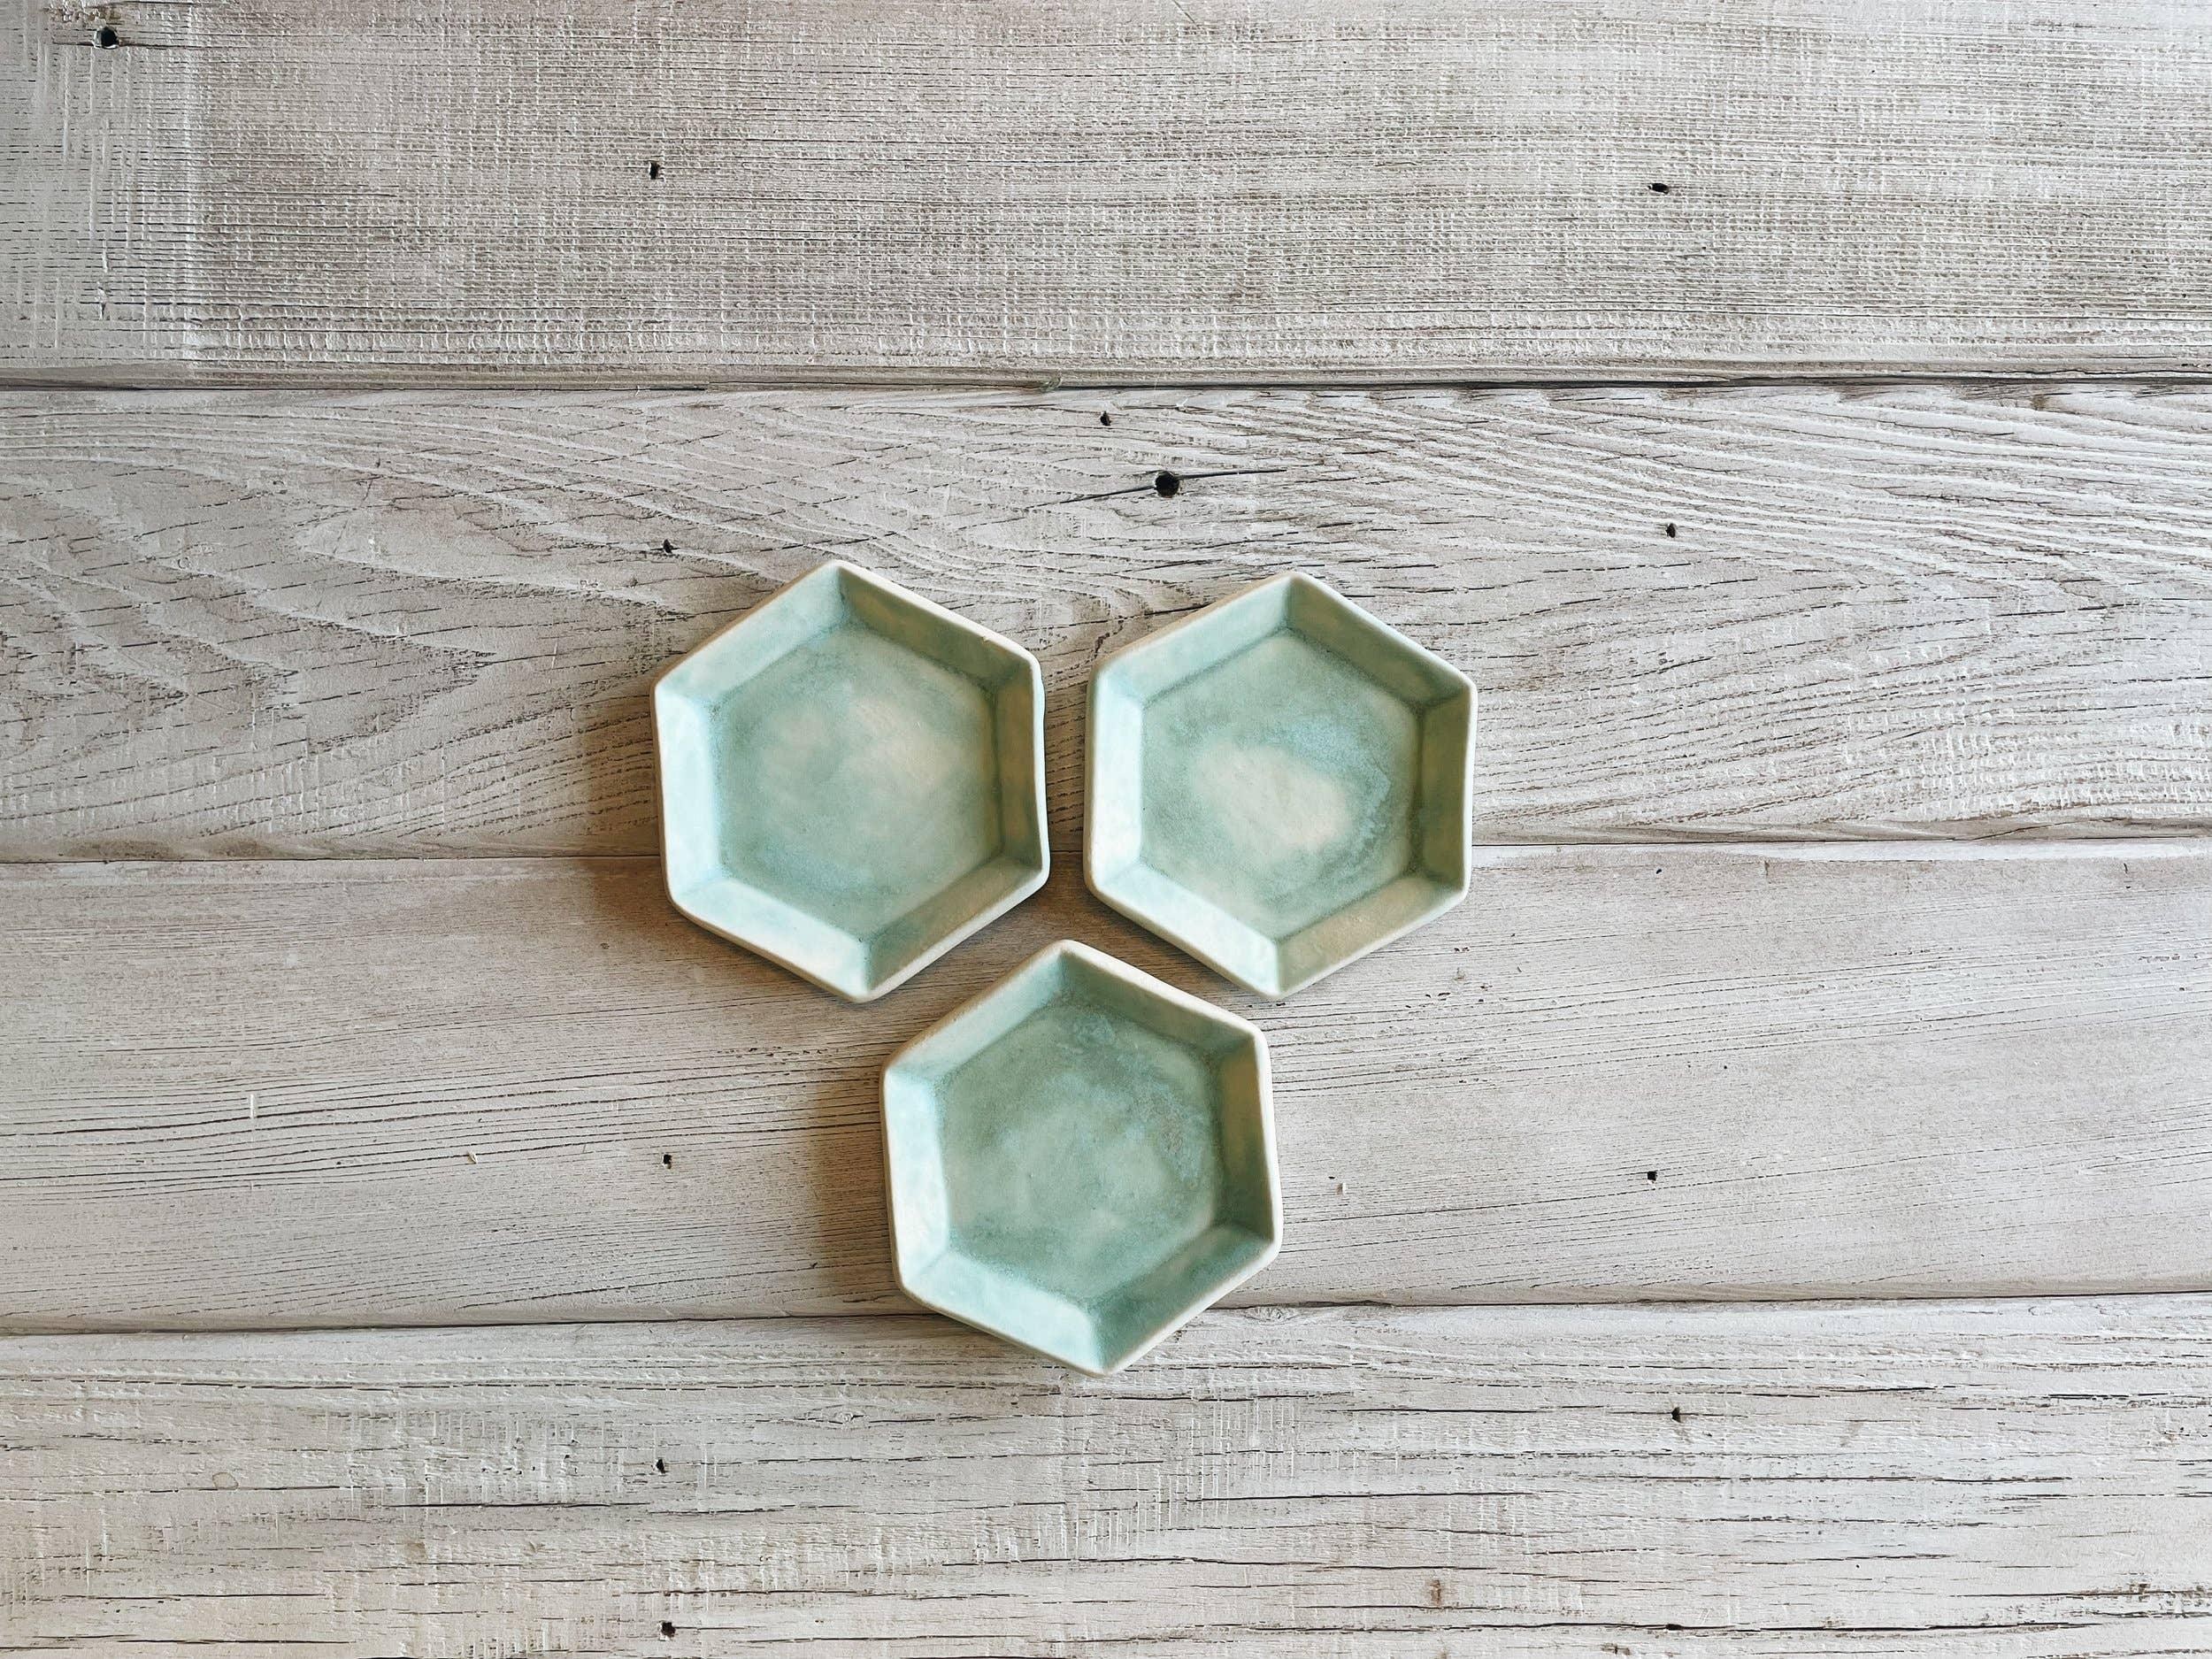 Bridget Dorr: Ceramic Hexagon Dish